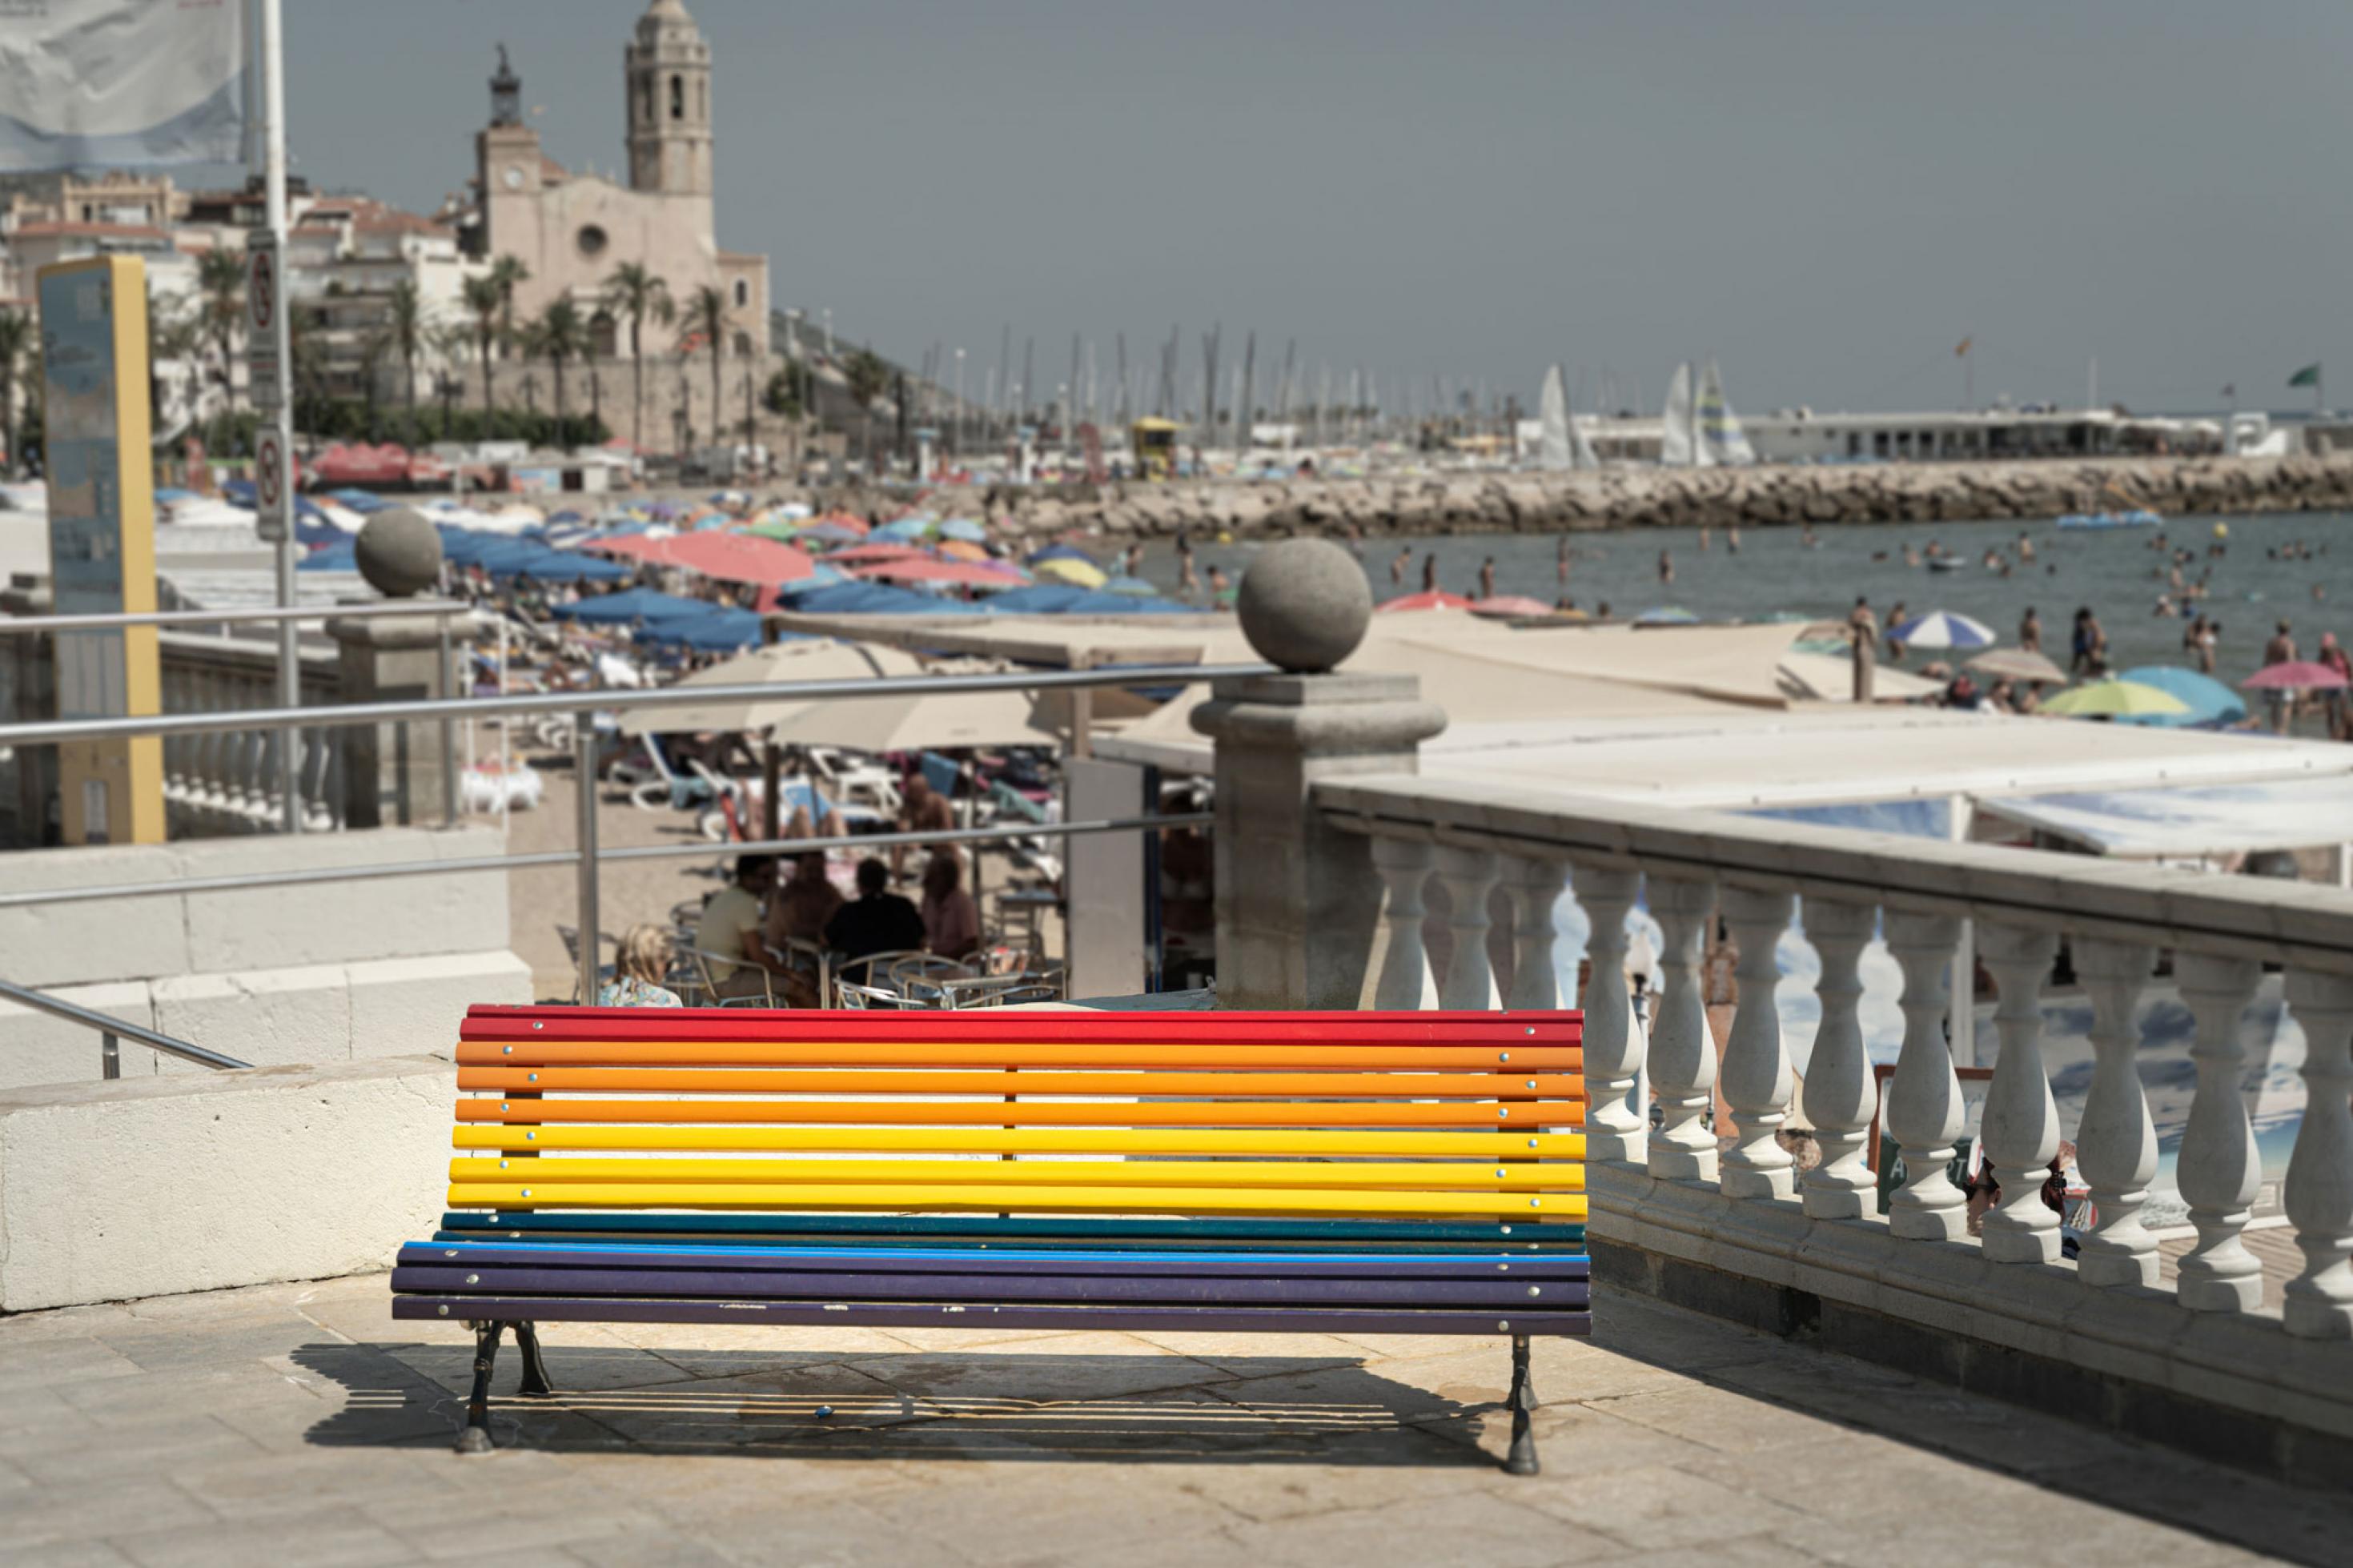 Eine in den Regenbogenfarben bemalte Sitzbank im spanischen Küstenstädtchen Sitges. Im Hintergrund ist eine Kirche, die Strandpromenade und das Meer zu sehen.